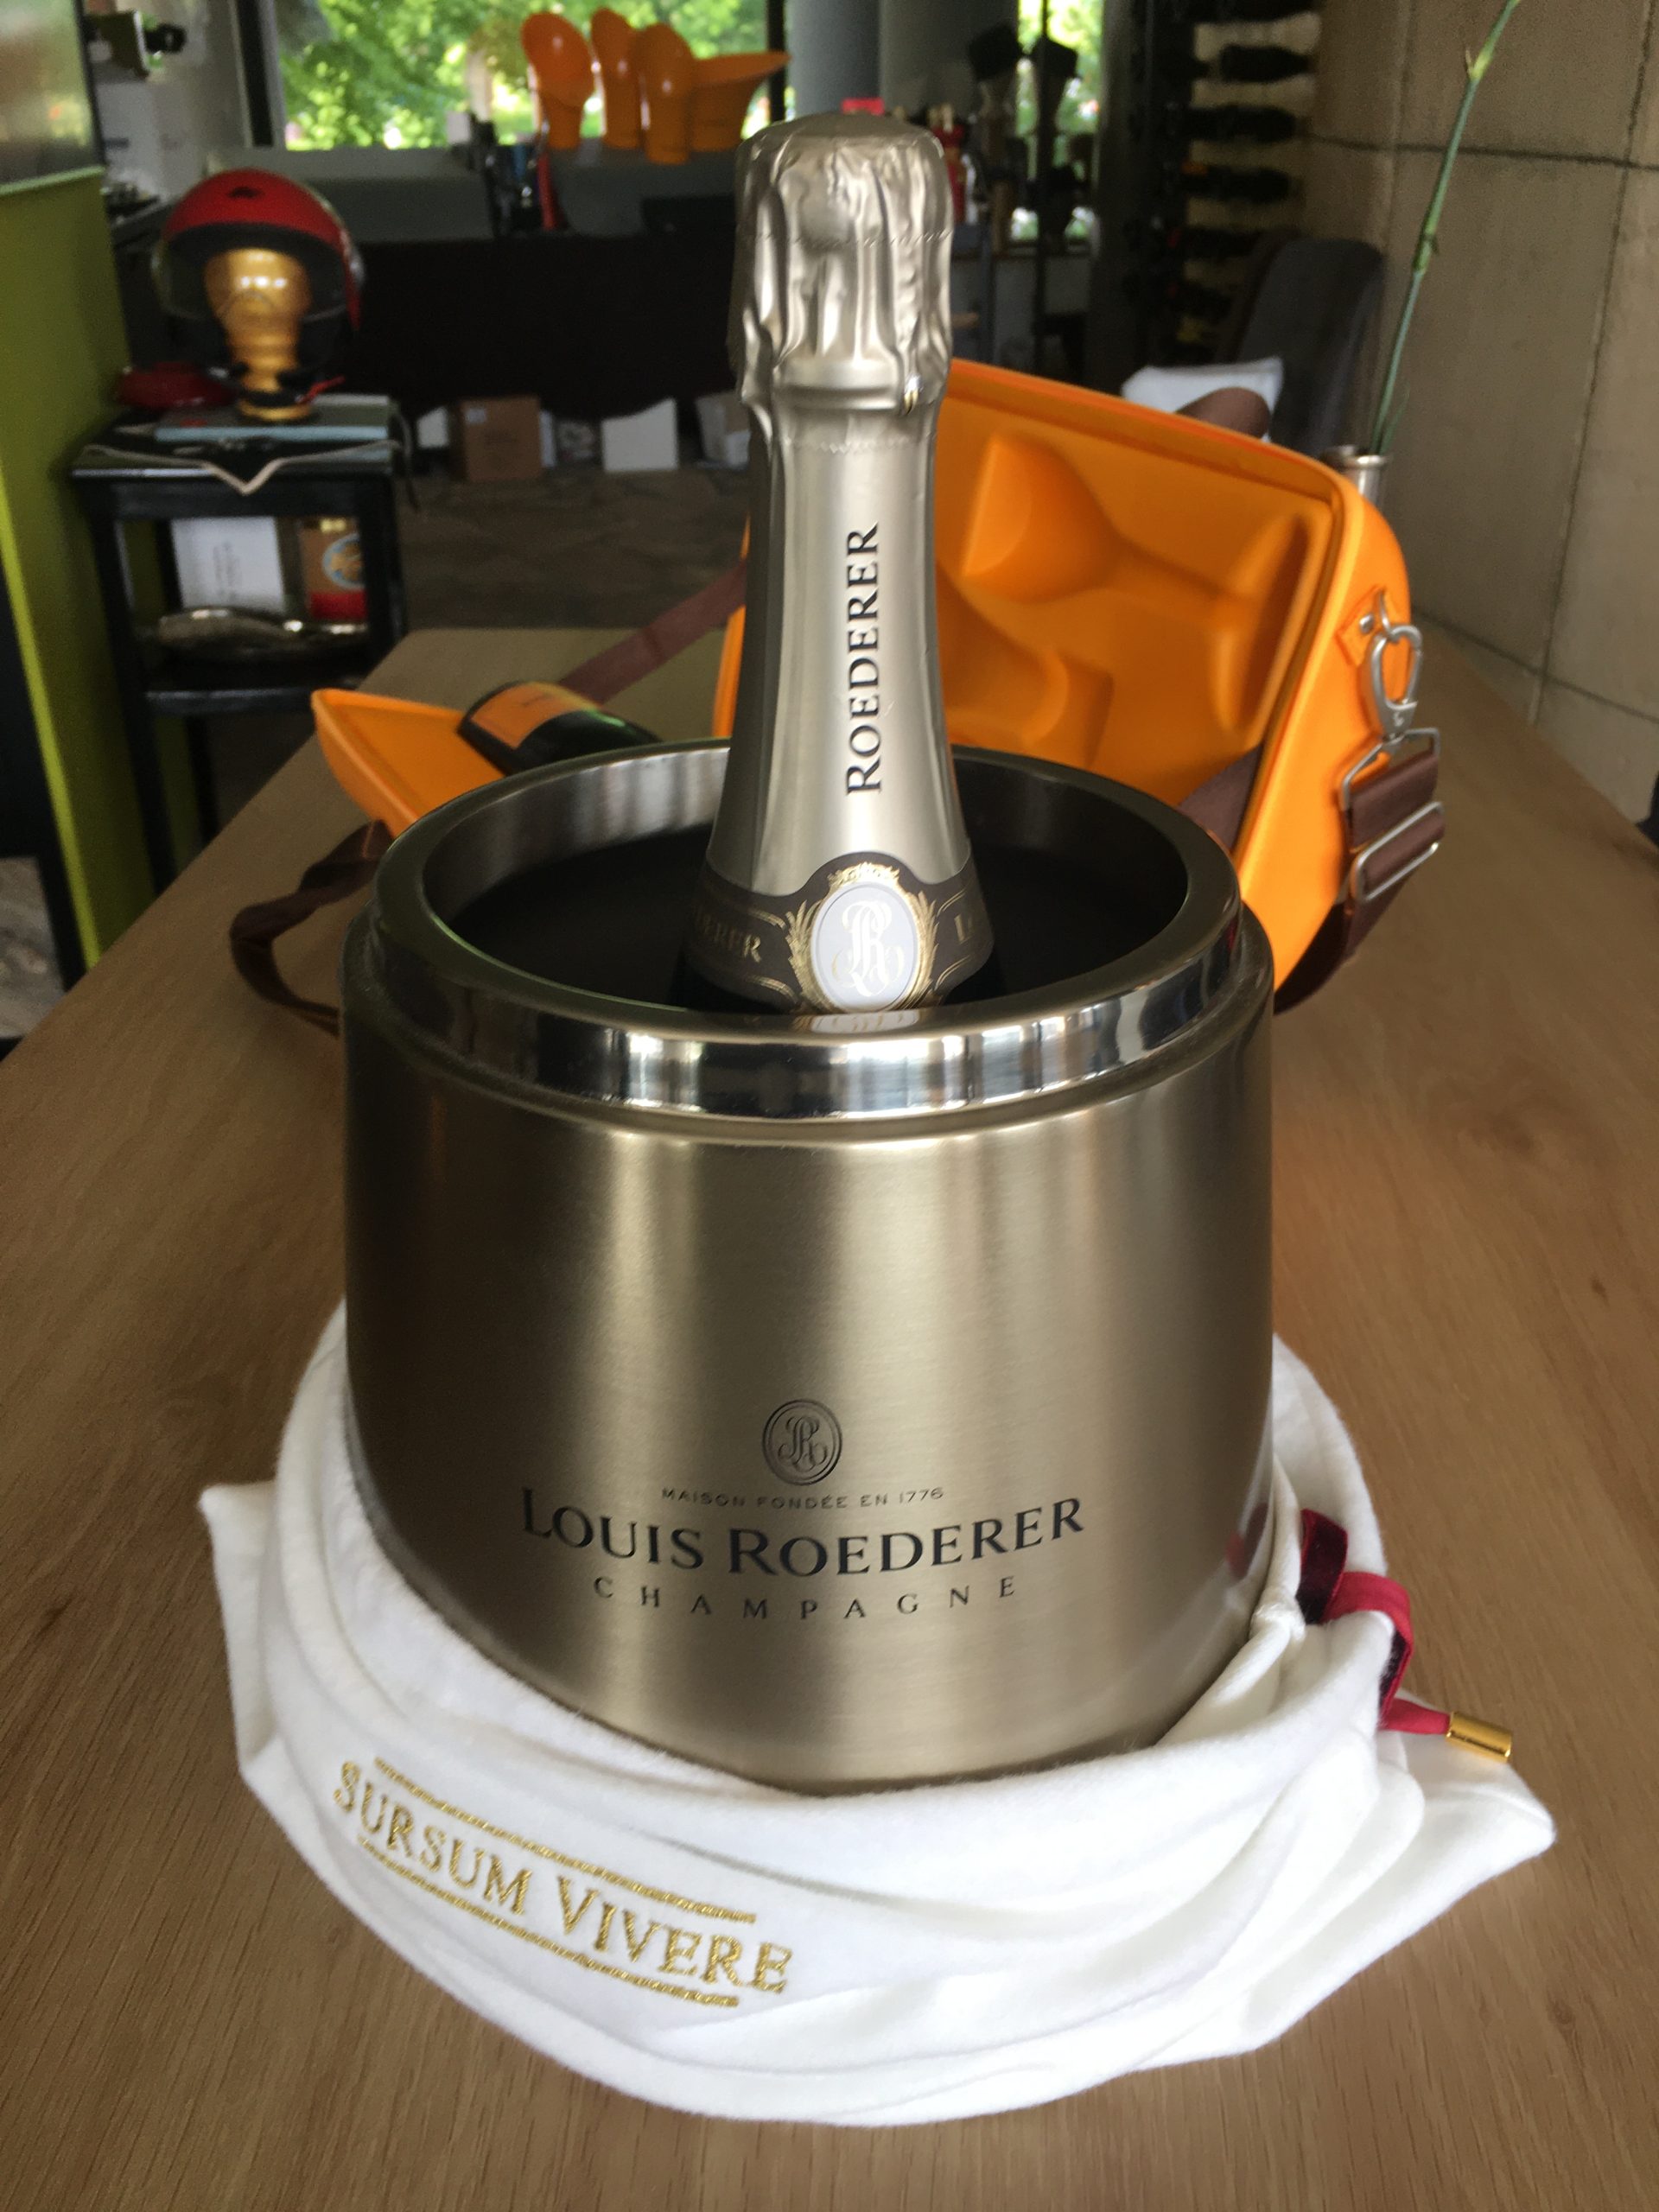 ELADVA – Louis Roederer Champagne hűtő vödör – 62.000.-Ft